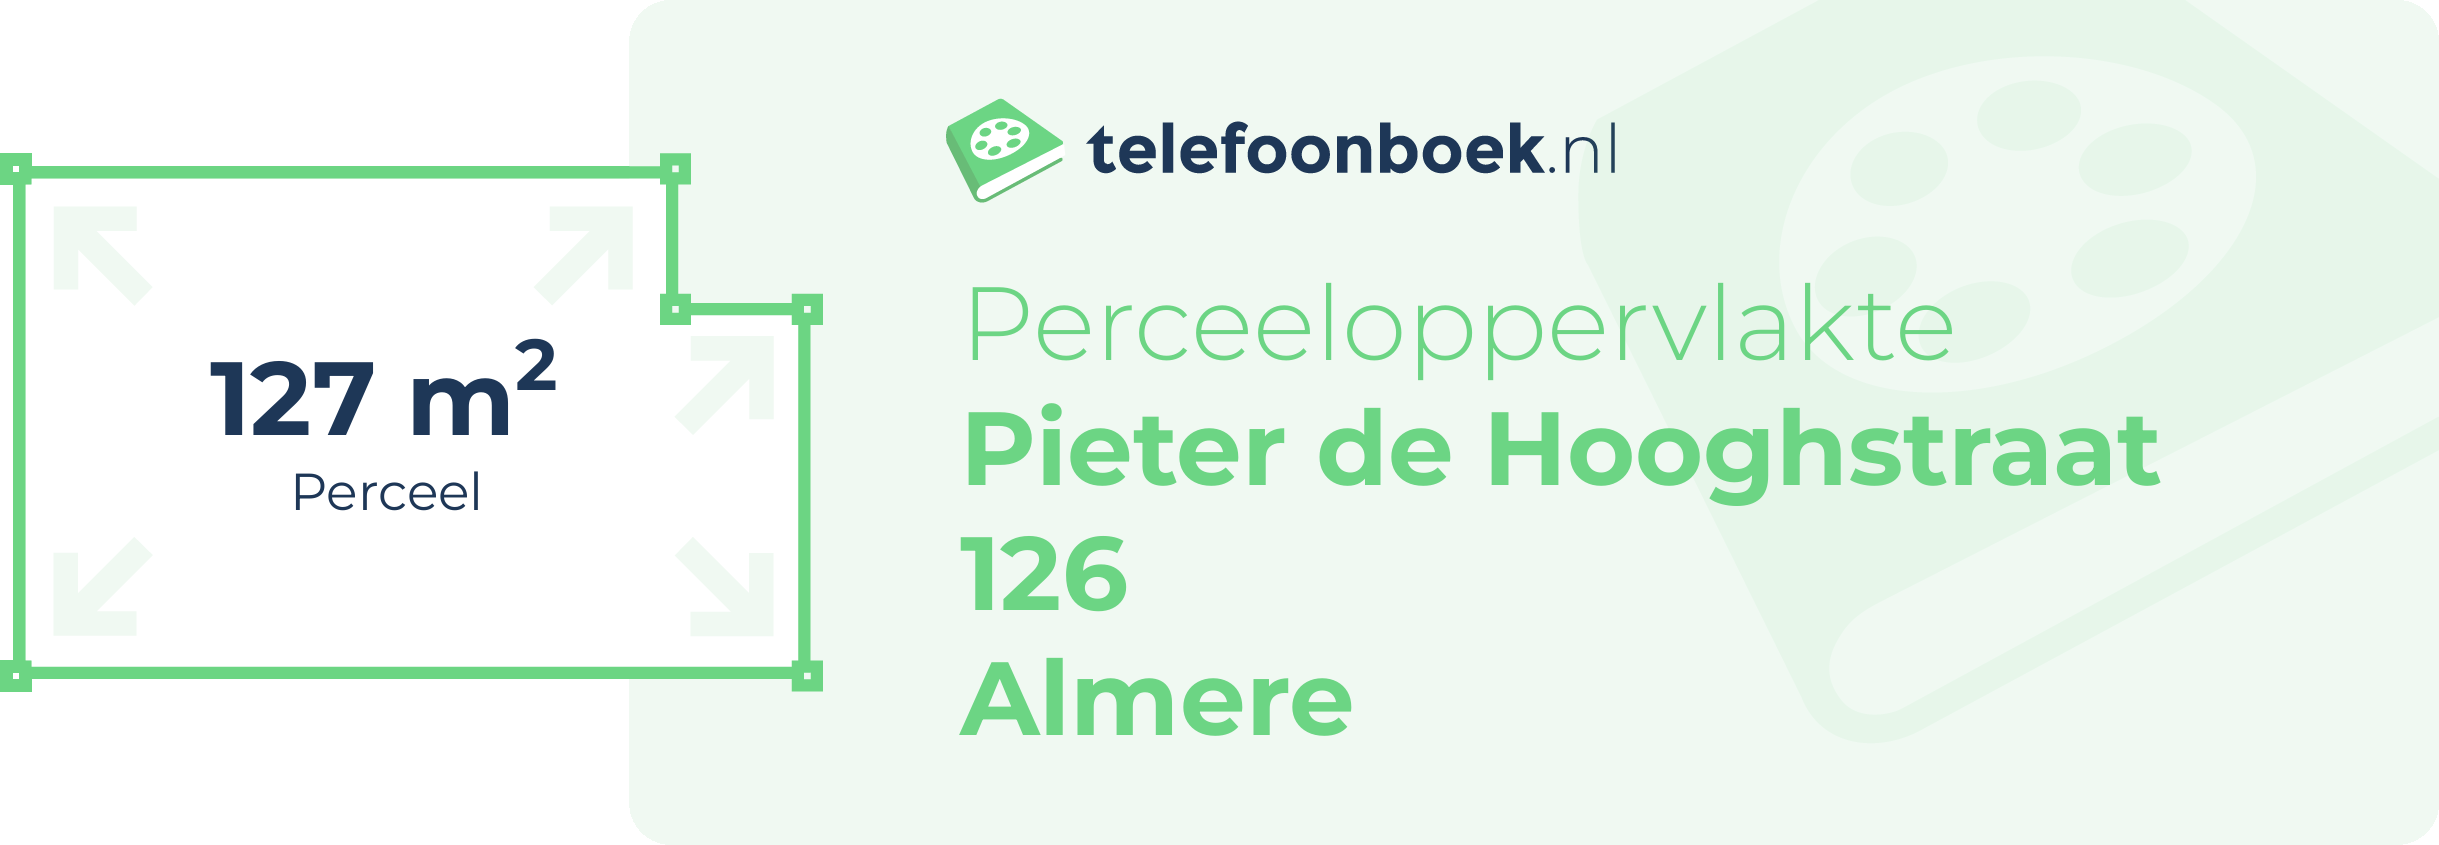 Perceeloppervlakte Pieter De Hooghstraat 126 Almere